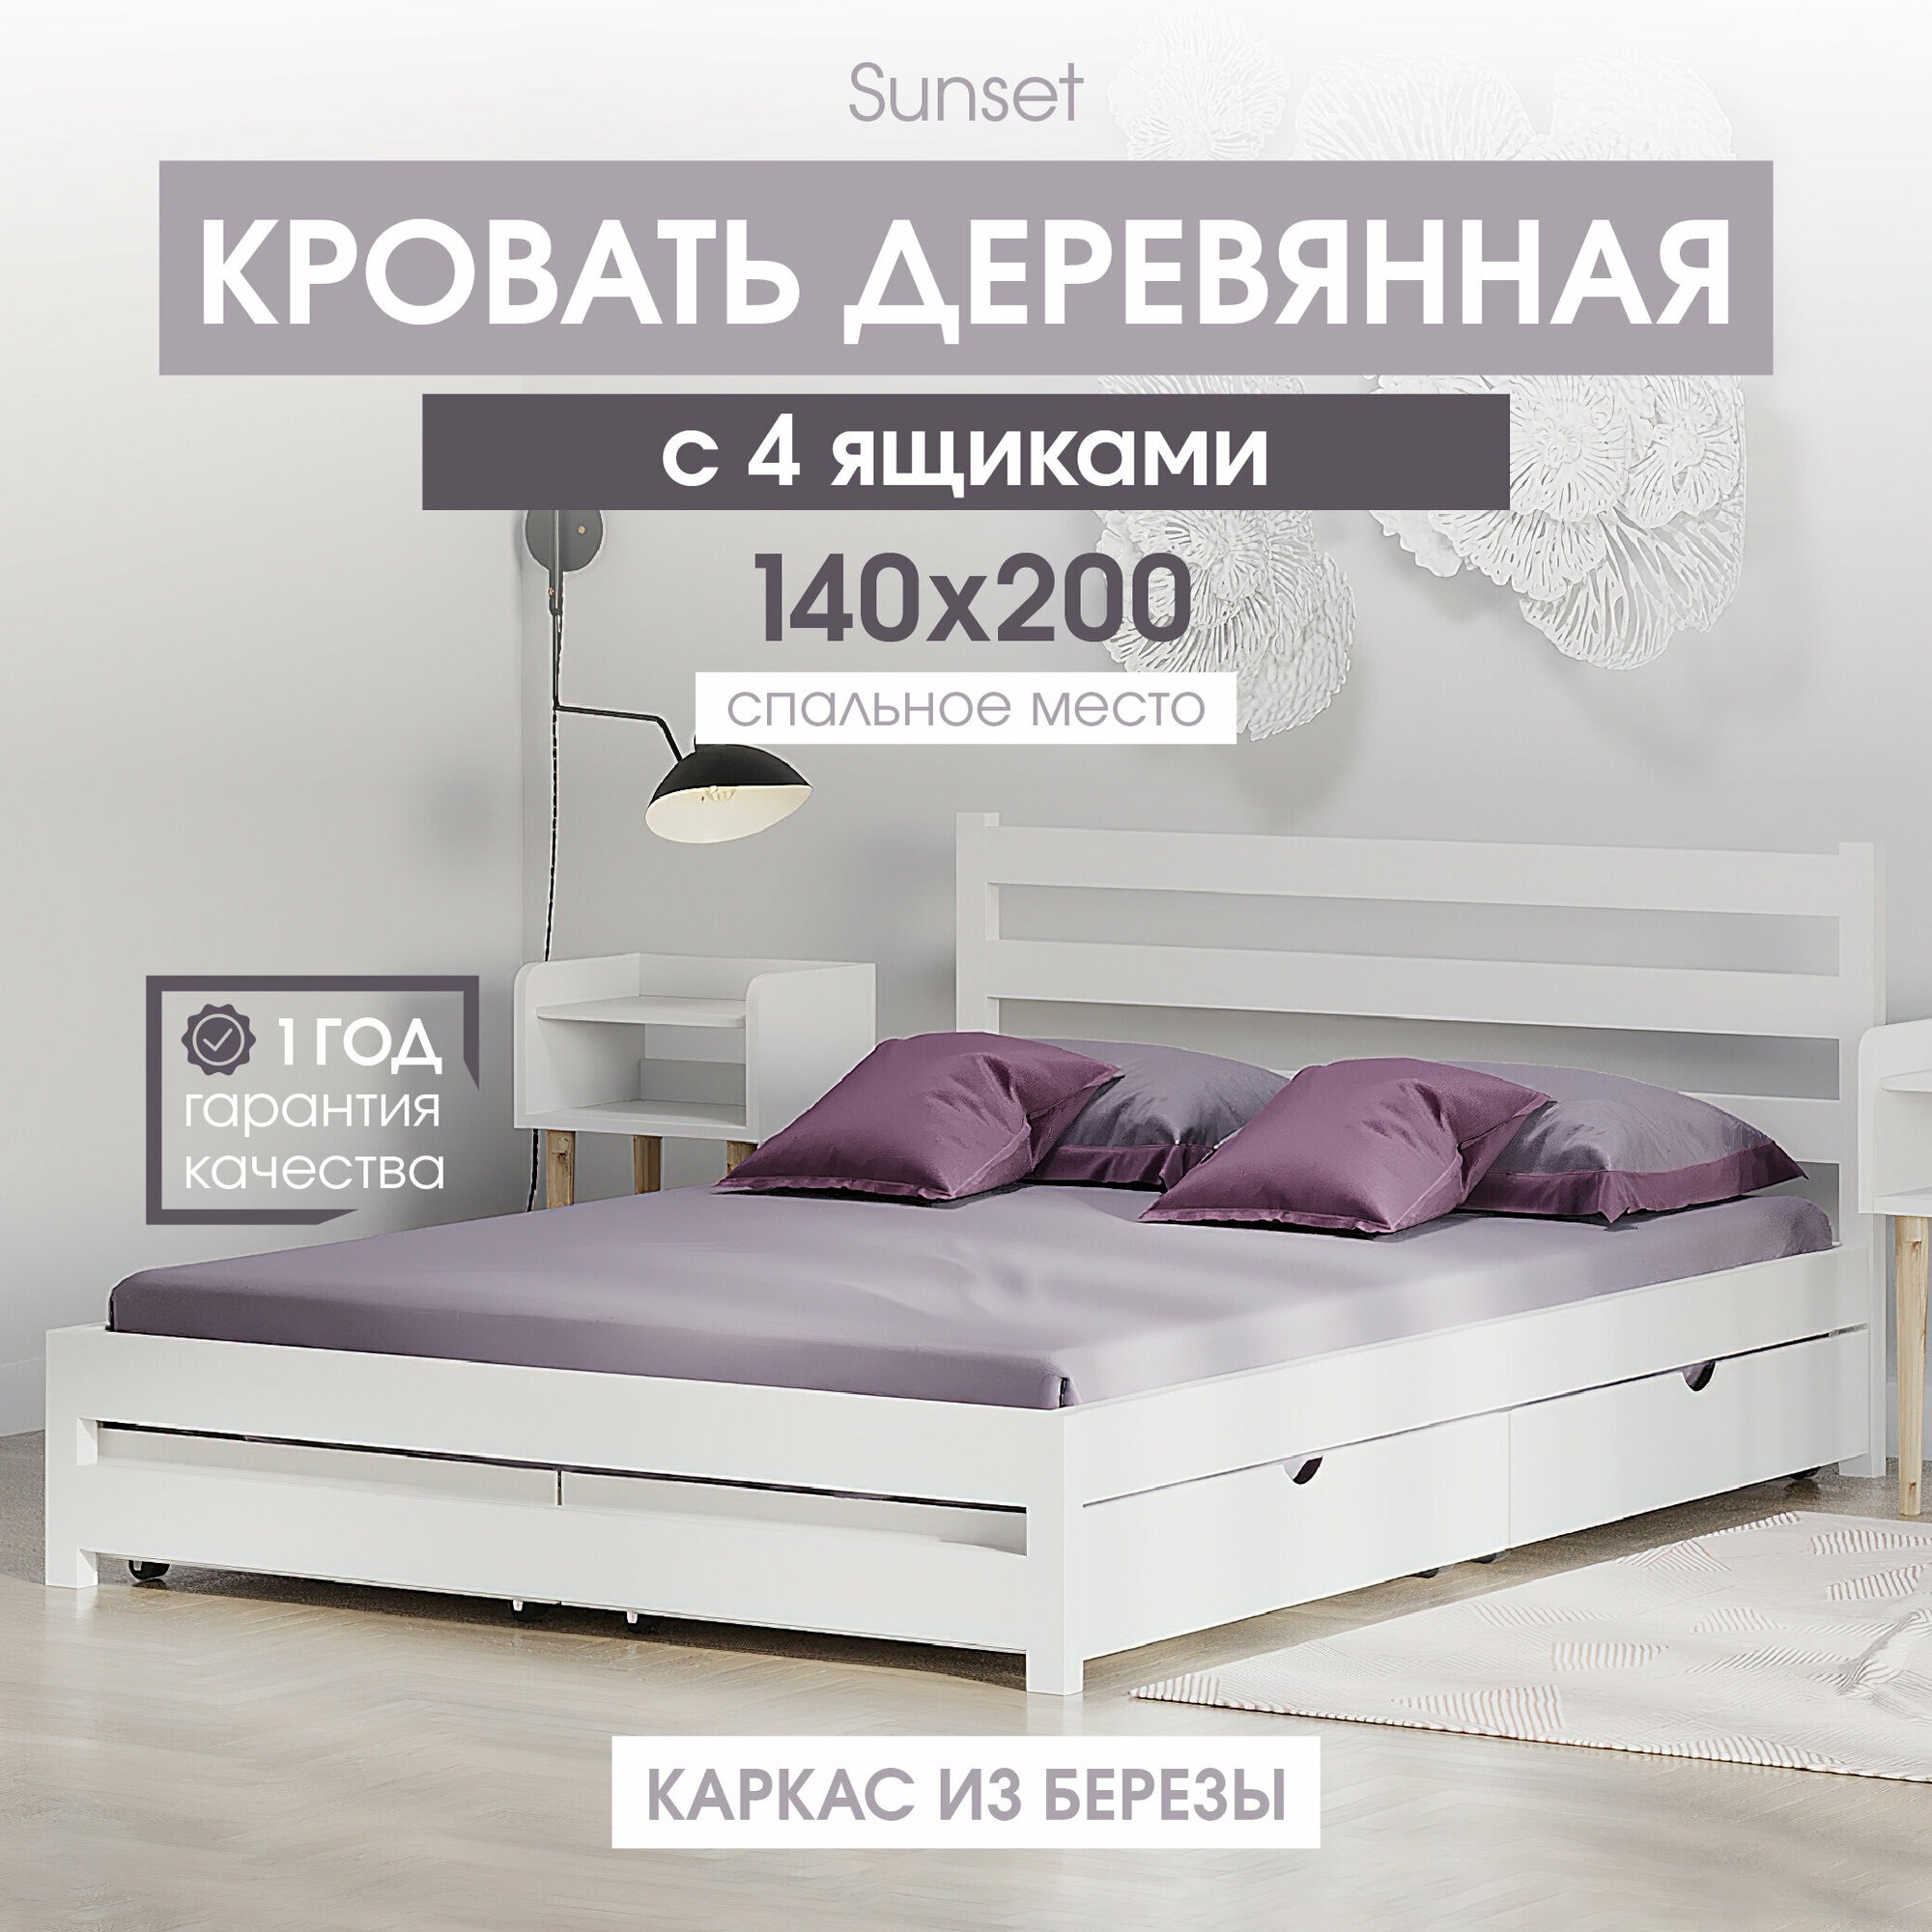 Двуспальная деревянная кровать Sunset 140х200 см с 4 ящиками, цвет Белый, береза